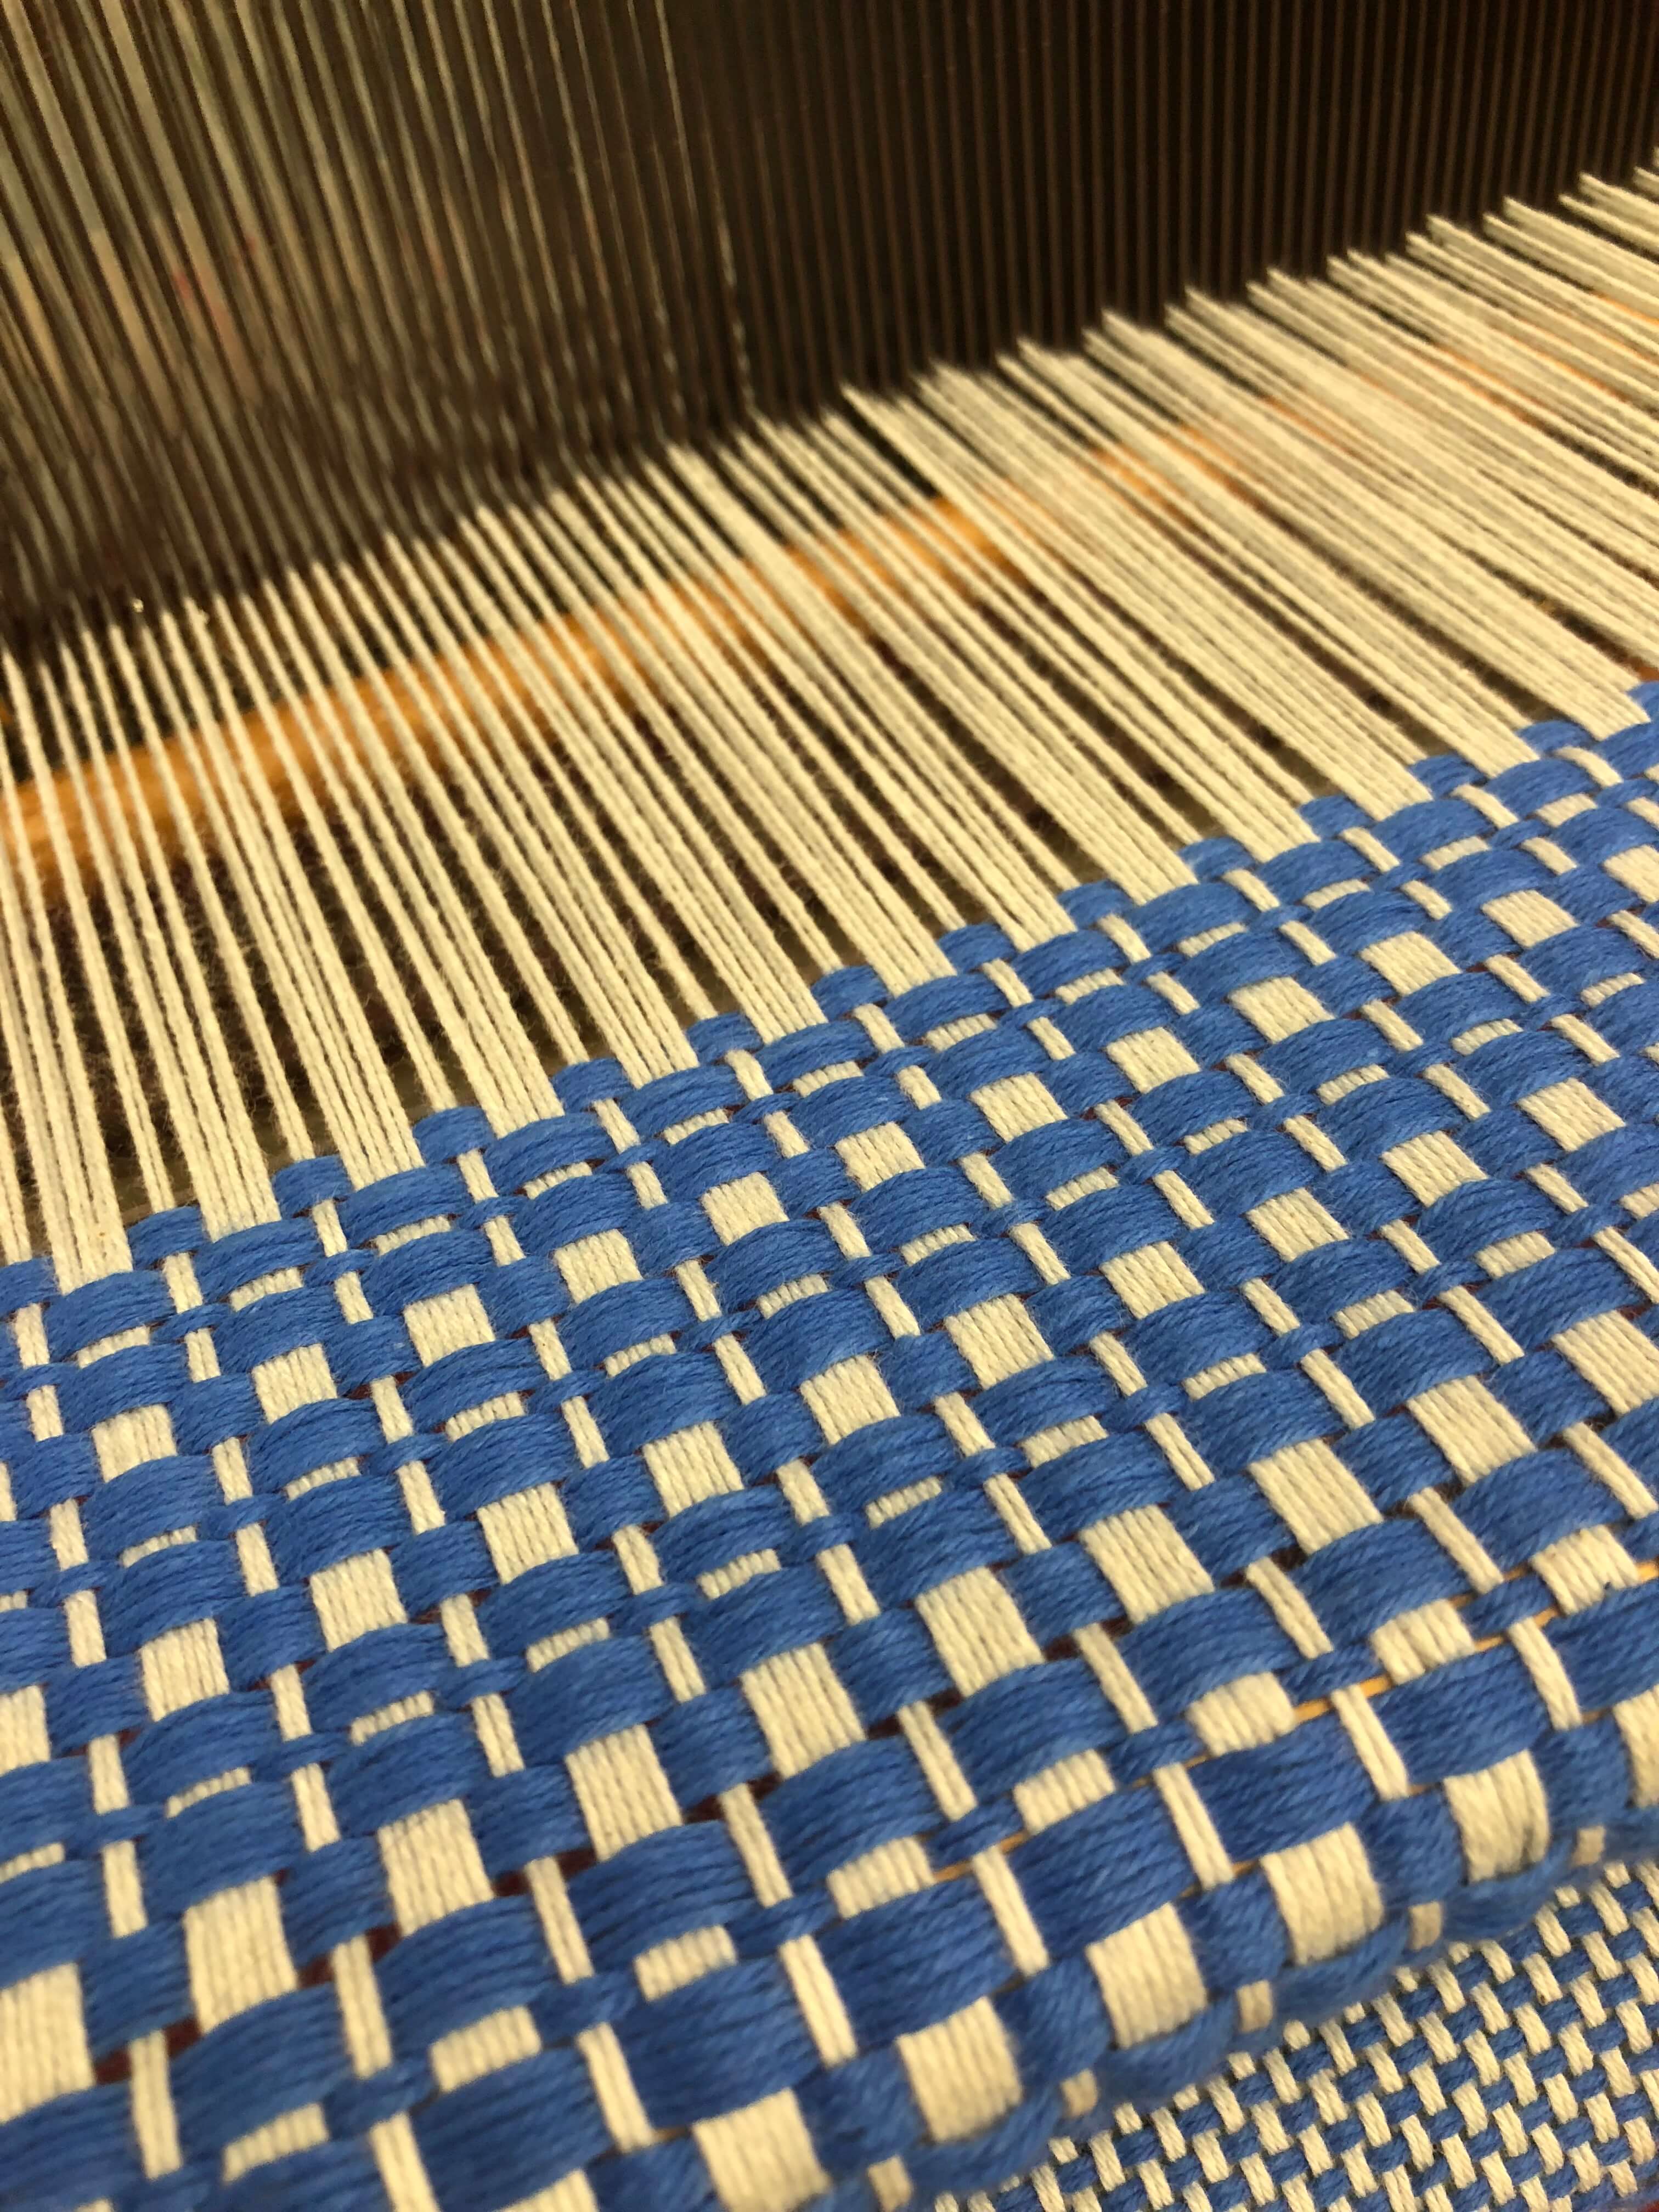 Weaving_2018_IMG_2791